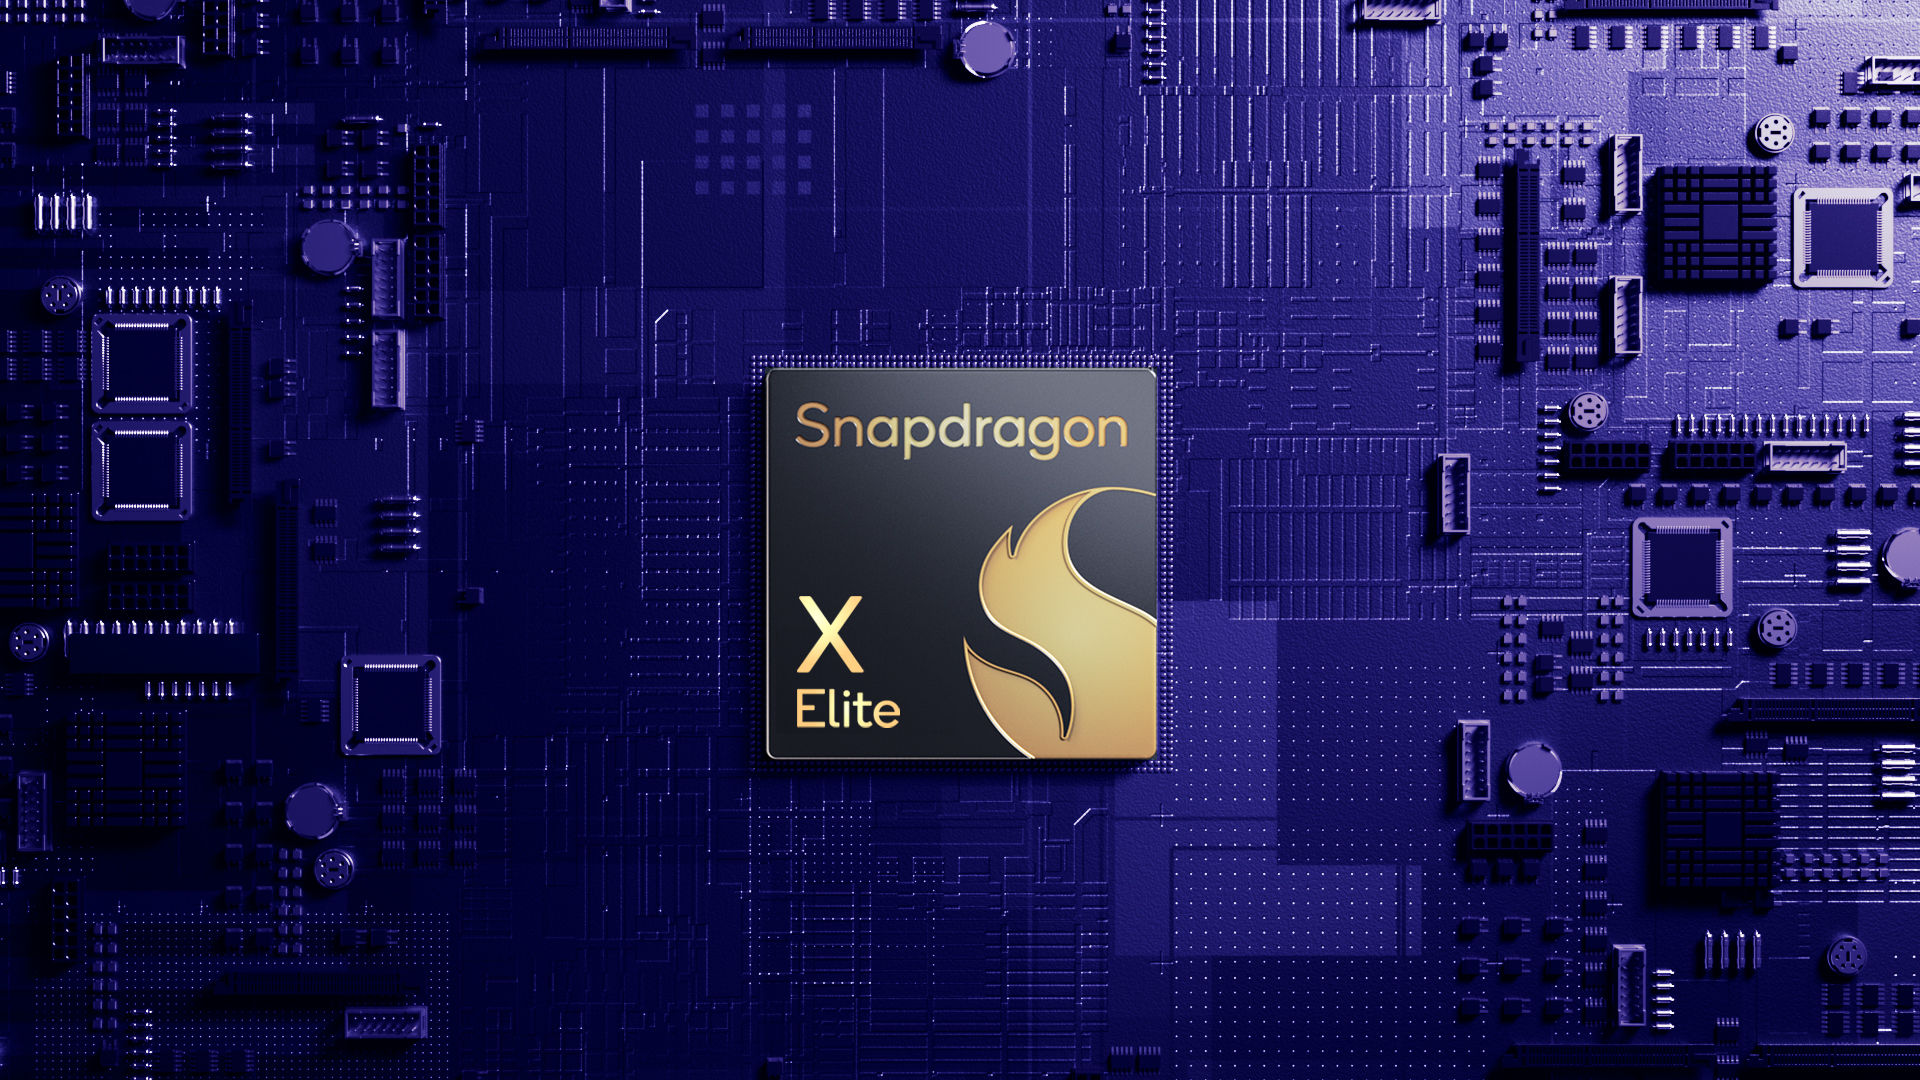 Snapdragon X Elite viser en 49% forbedring af ydeevnen